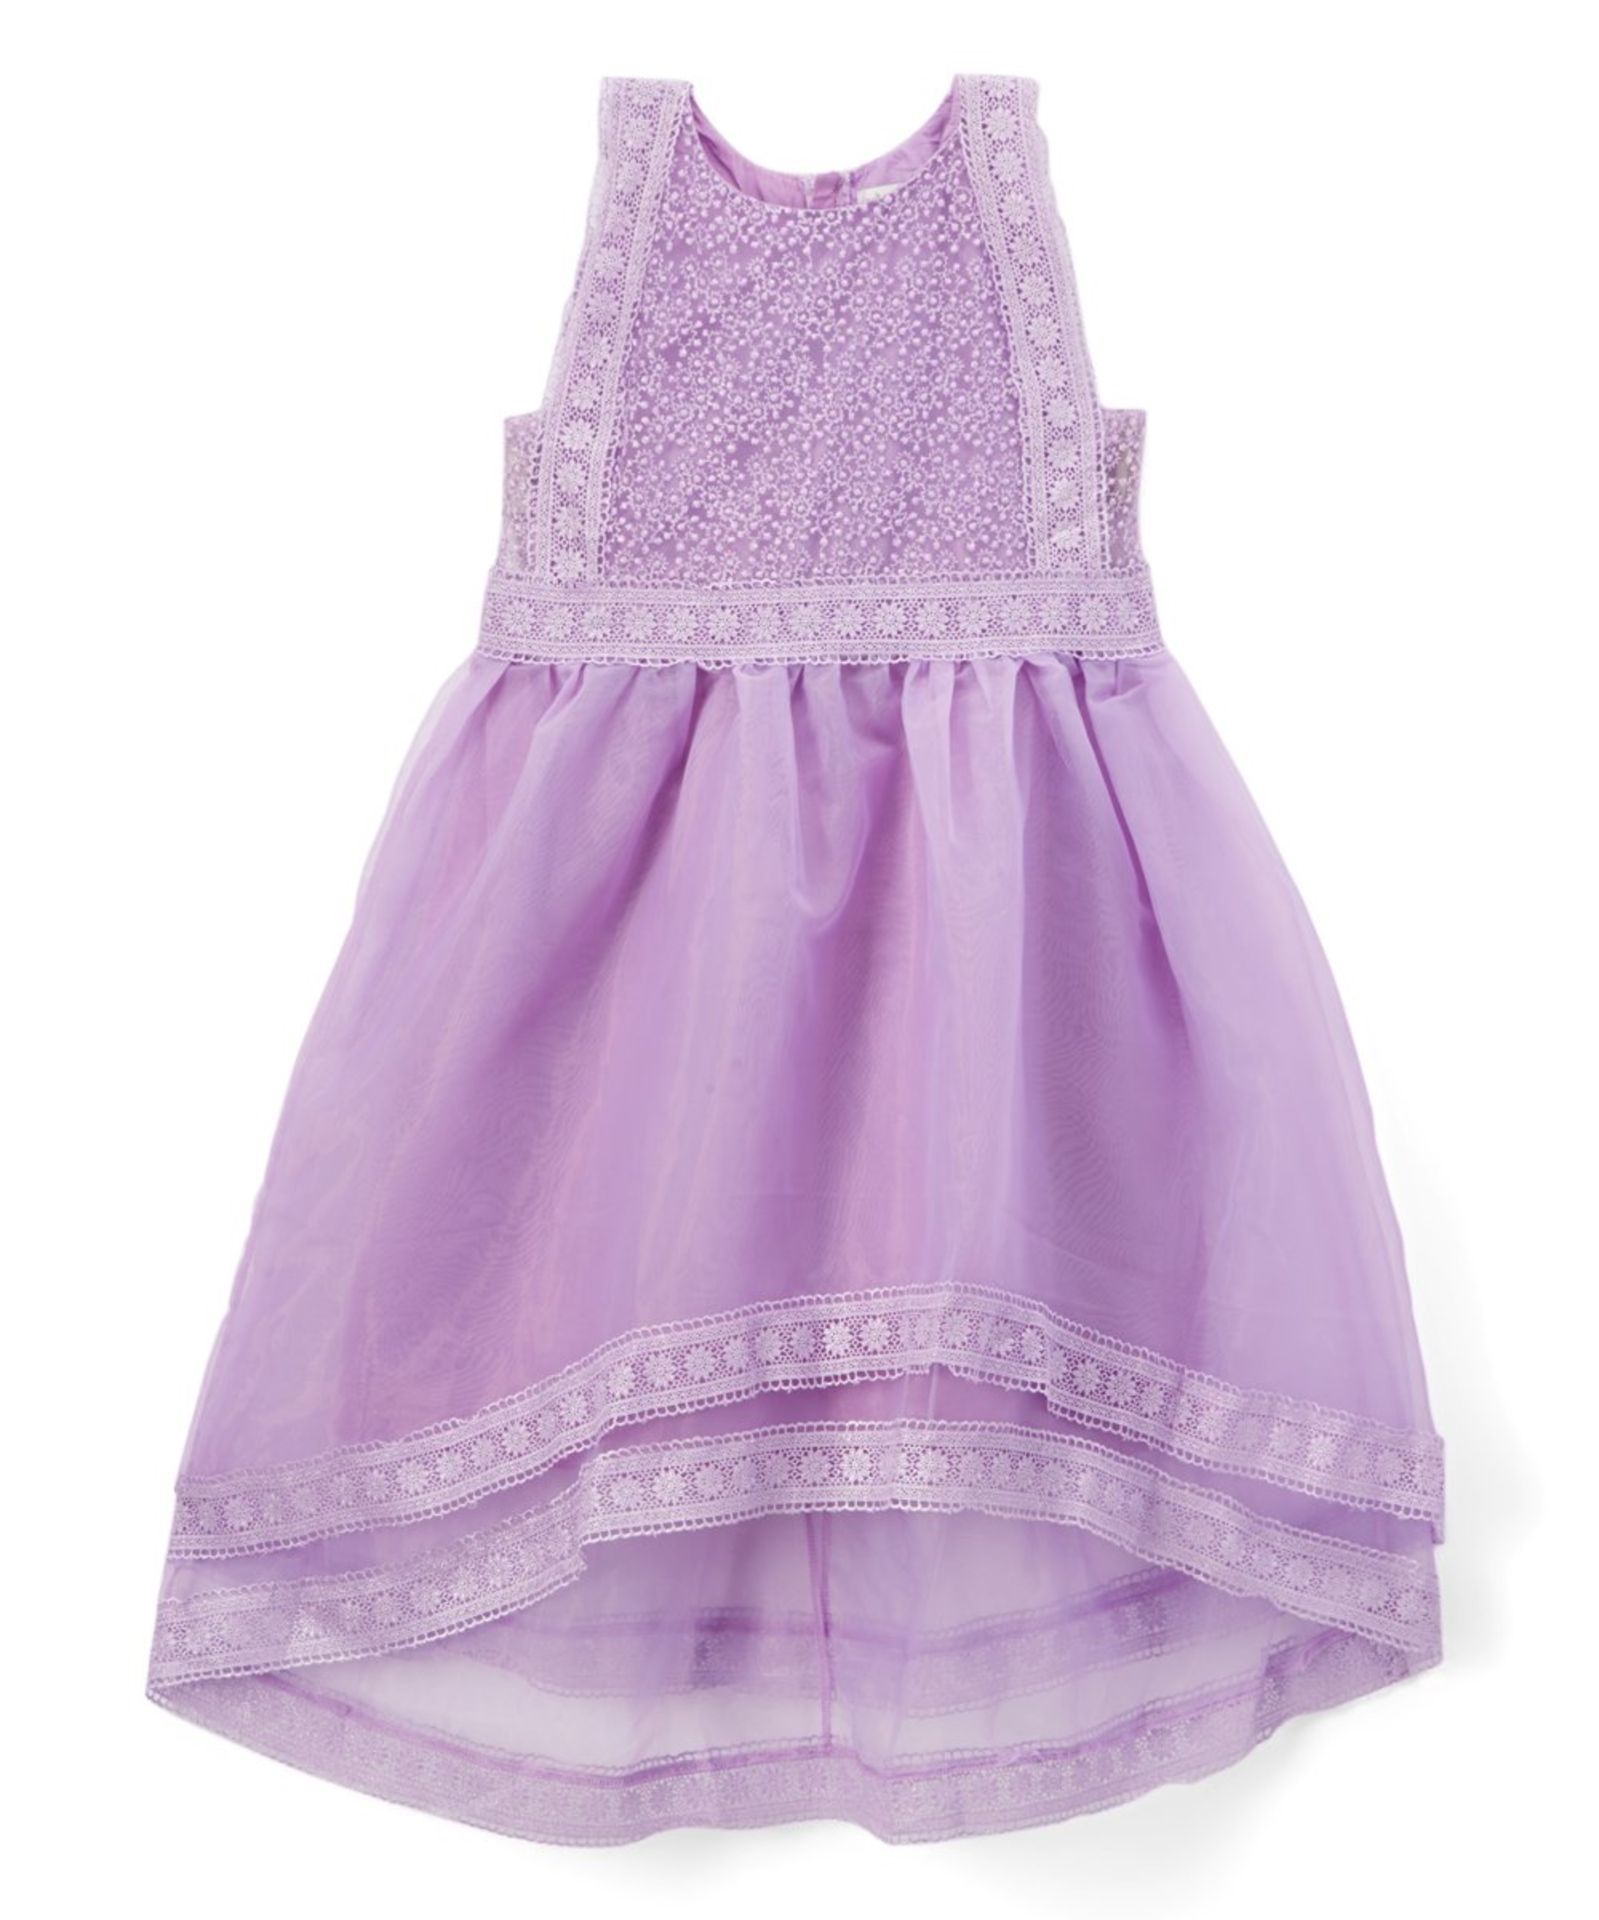 Lavender Delphine Dress - Infant, Toddler & Girls - Image 3 of 3